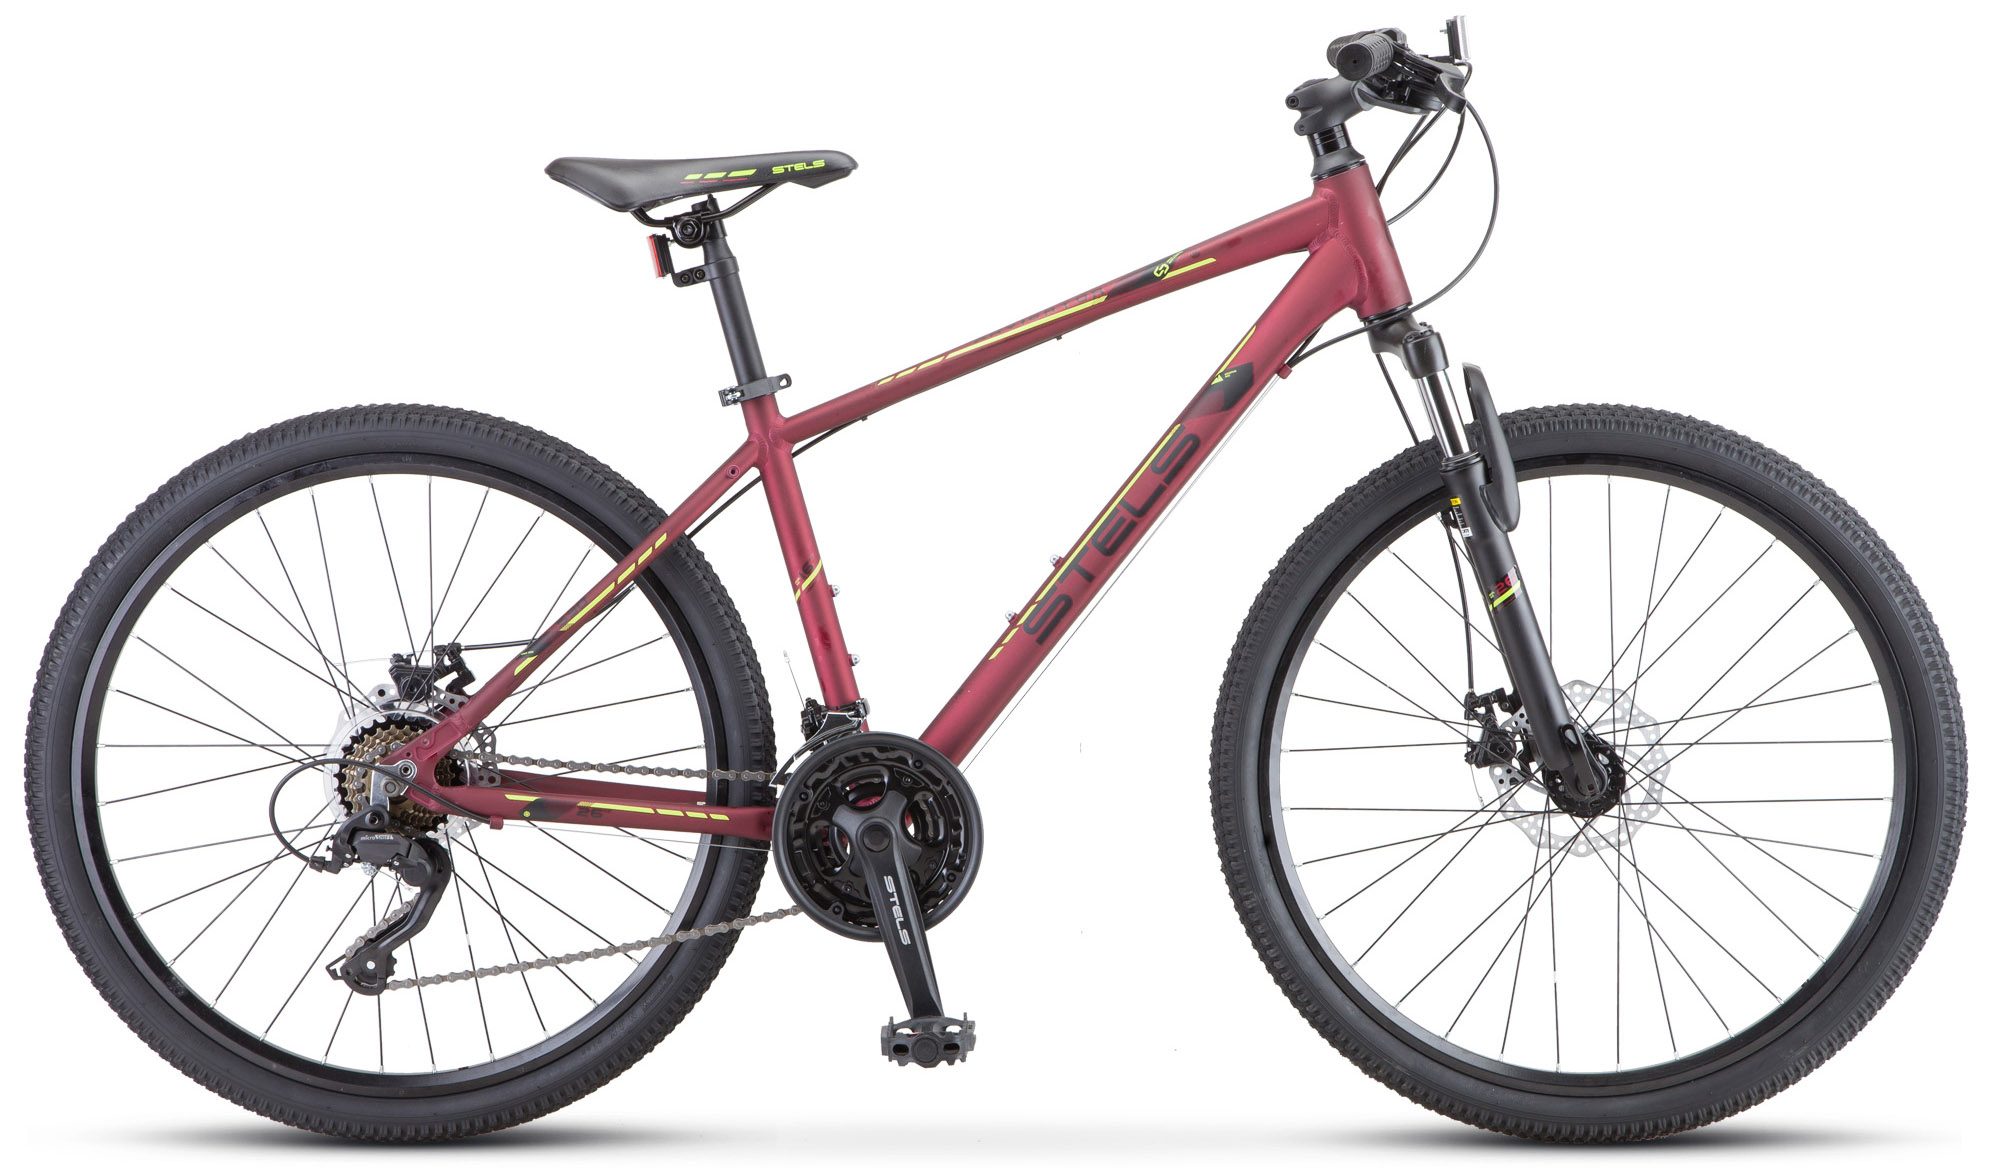  Отзывы о Горном велосипеде Stels горный велосипед Stels Navigator 590 MD K010 2020 2020